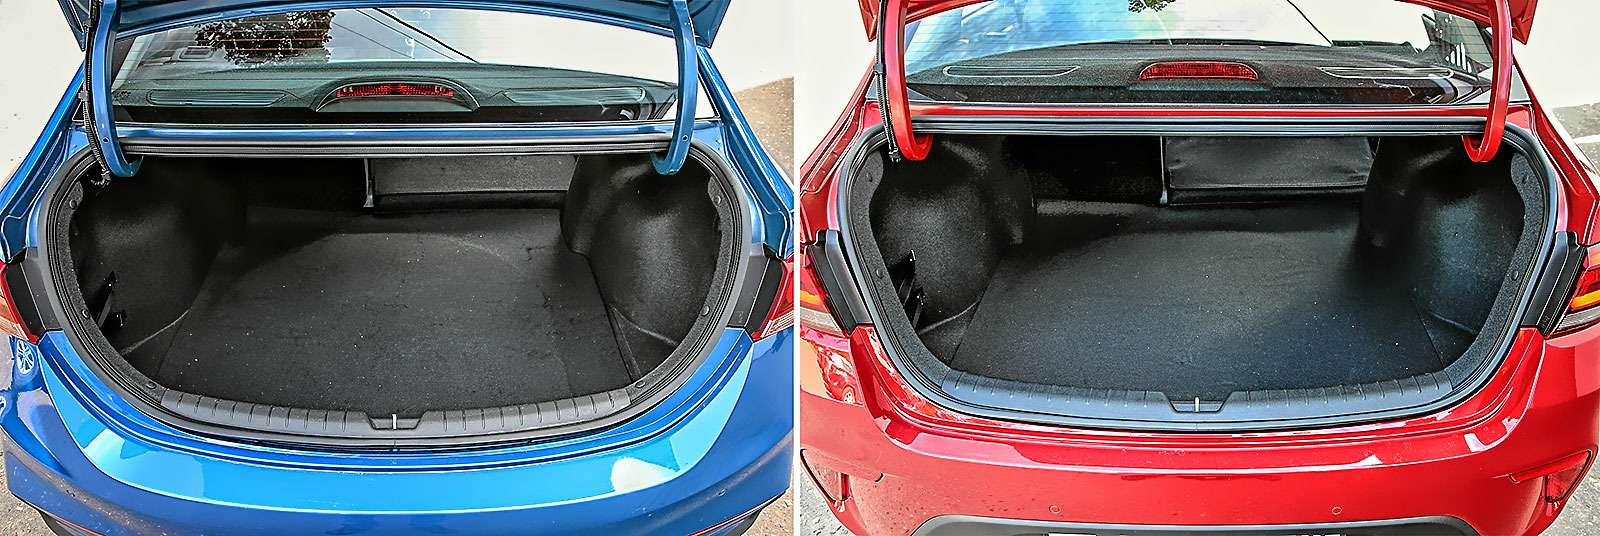 Несмотря на одинаковые объемы багажников (480 литров), грузить крупногабаритные вещи проще в Kia - за счет более широкого проема. Разница составляет приличные 12 см и видна невооруженным глазом.